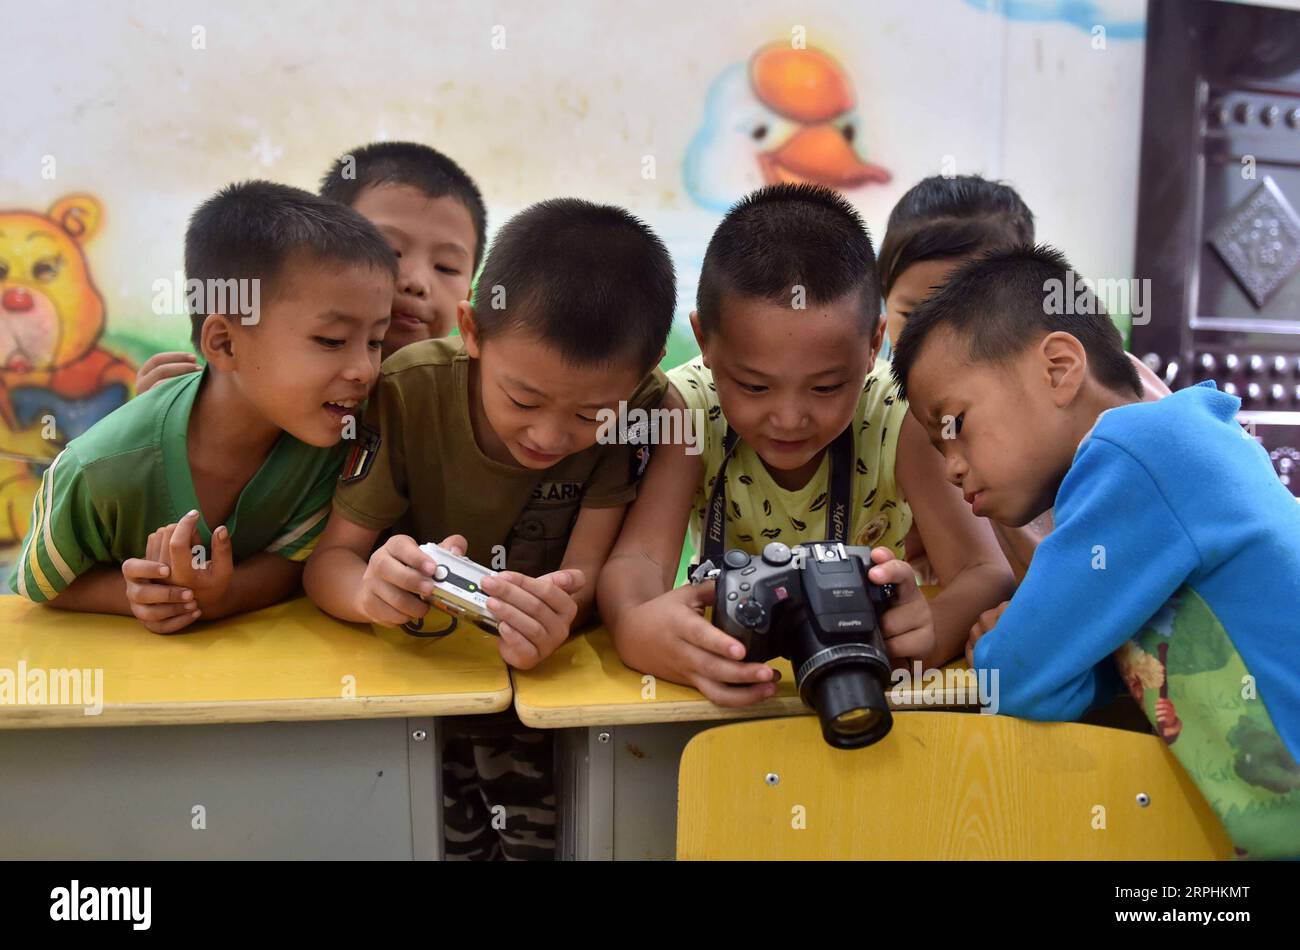 191112 -- DAHUA, 12. November 2019 -- Studenten verwenden Kameras, die ihnen als Geschenke in der Nongyong Primary School im Dorf Nongyong der Gemeinde Bansheng, Dahua Yao Autonomous County, südchinesische autonome Region Guangxi Zhuang, 1. September 2016 gespendet wurden. Die lokale Regierung hat in den letzten Jahren viele Maßnahmen zur Armutsbekämpfung durchgeführt und mehr als 5 Millionen Yuan in rund 713.970 US-Dollar investiert, um die Nongyong Primary School umzugestalten und auszubauen. Neben dem neuen Lehrgebäude, dem Schlafsaal, der Kantine und den Toiletten gibt es viele moderne Einrichtungen wie Multimedia-Unterricht und einen Raum für Vokalmusik Stockfoto